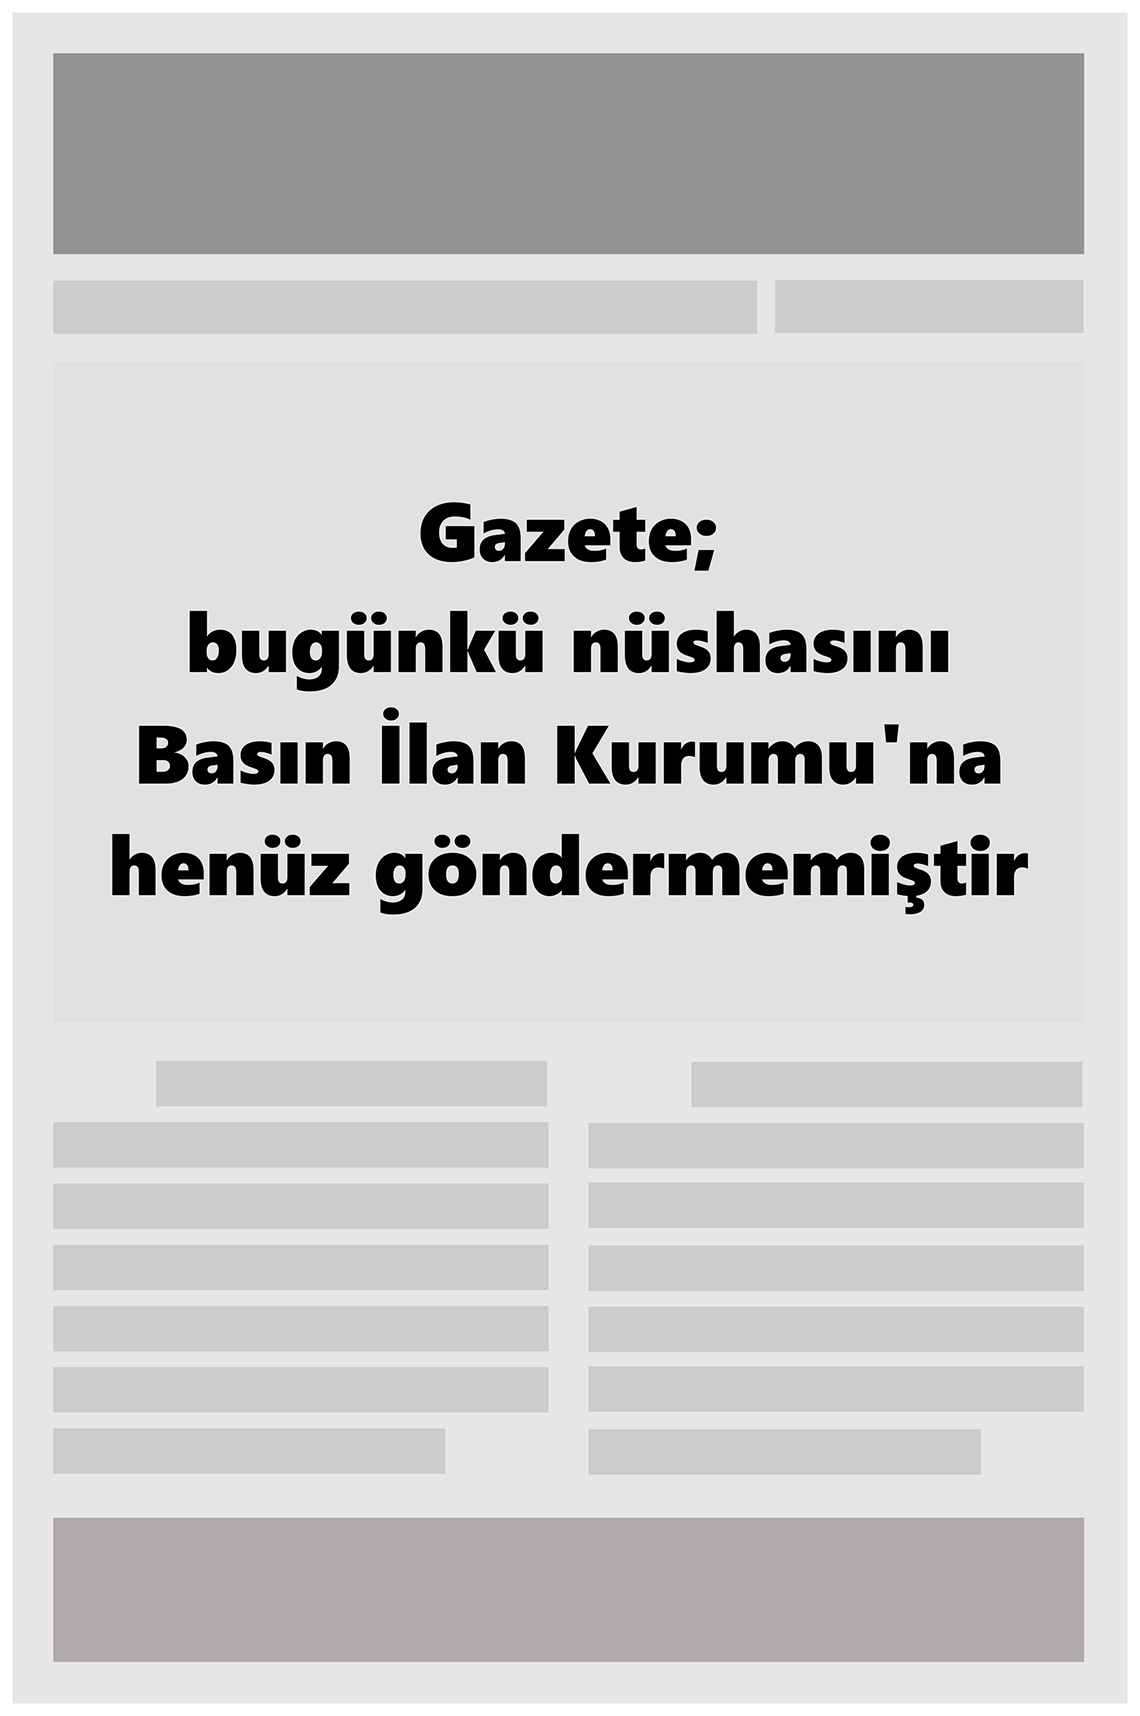 16 Ocak 2022 Büyükşehir Merhaba GAzetesi Gazete Manşeti